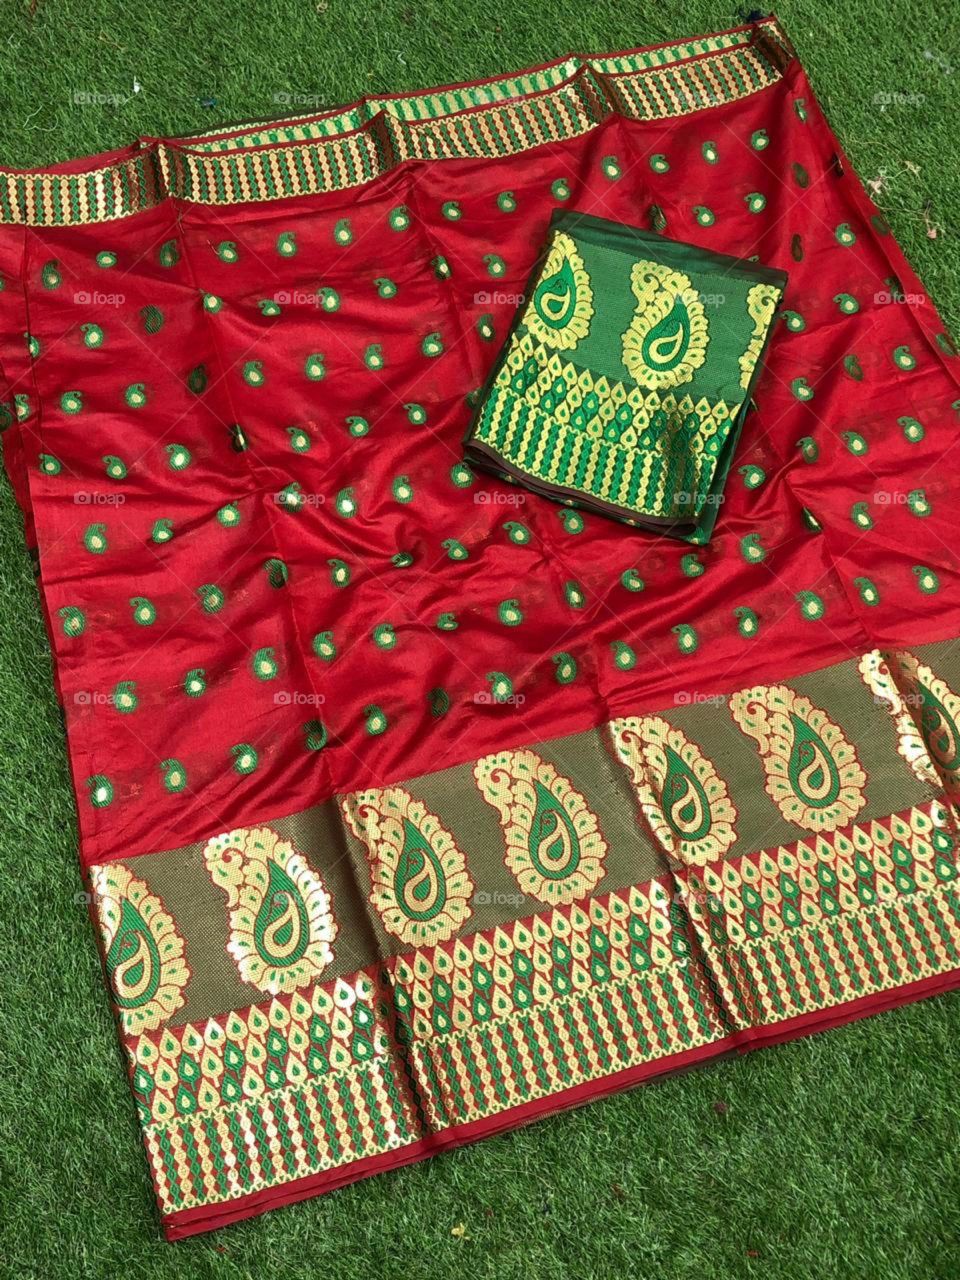 red pattern border jacquard pattern fabric banarasi Indian saree